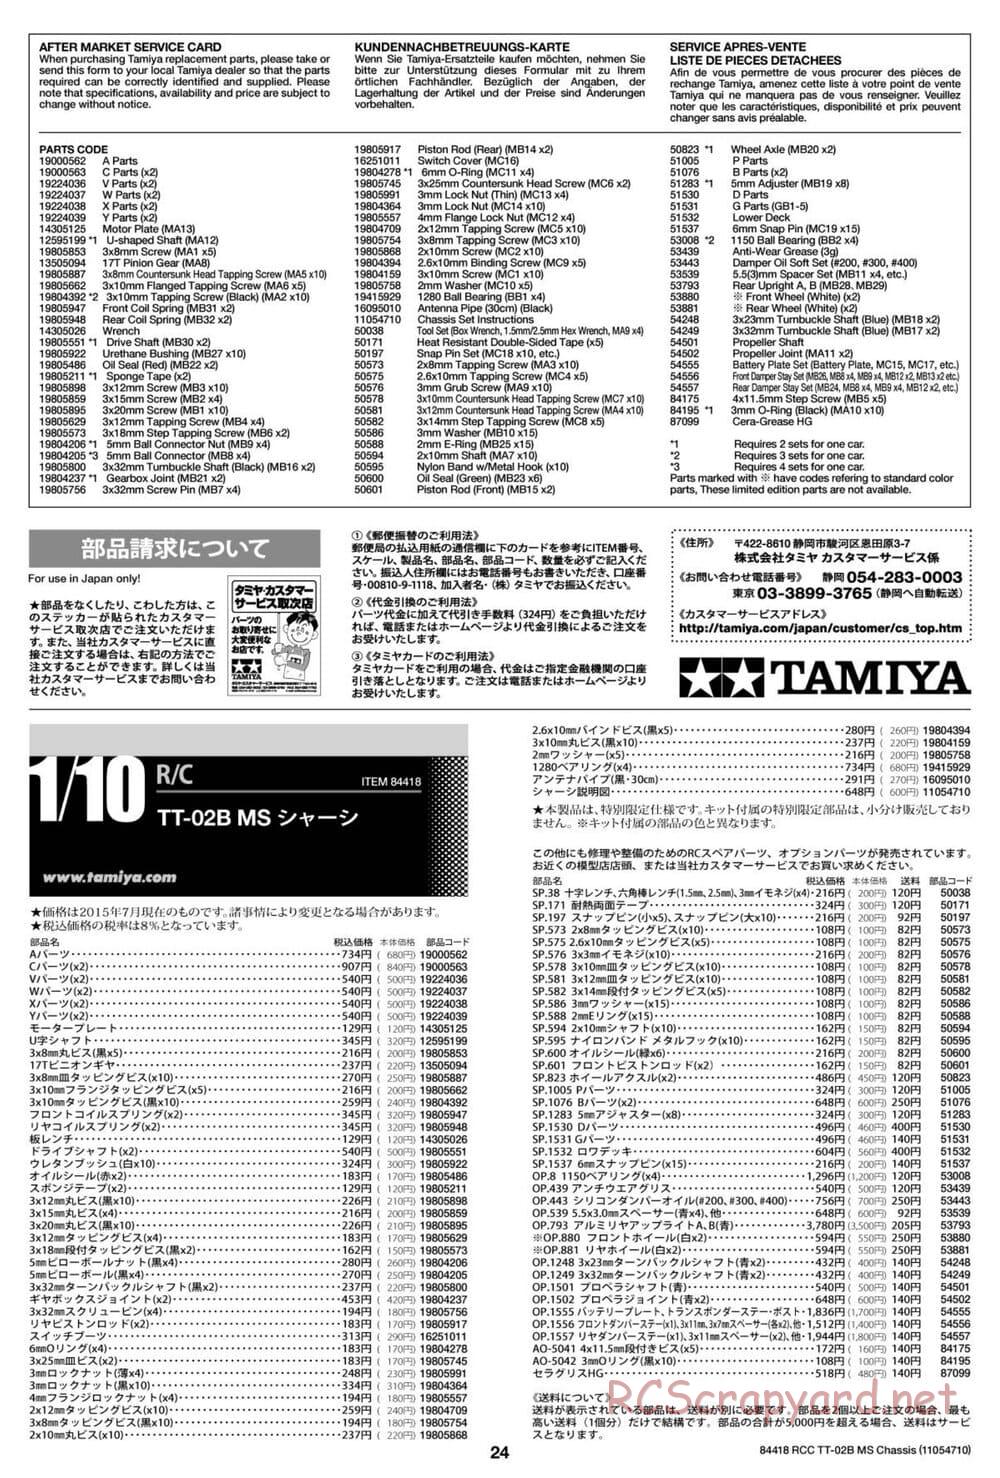 Tamiya - TT-02B MS Chassis - Manual - Page 24